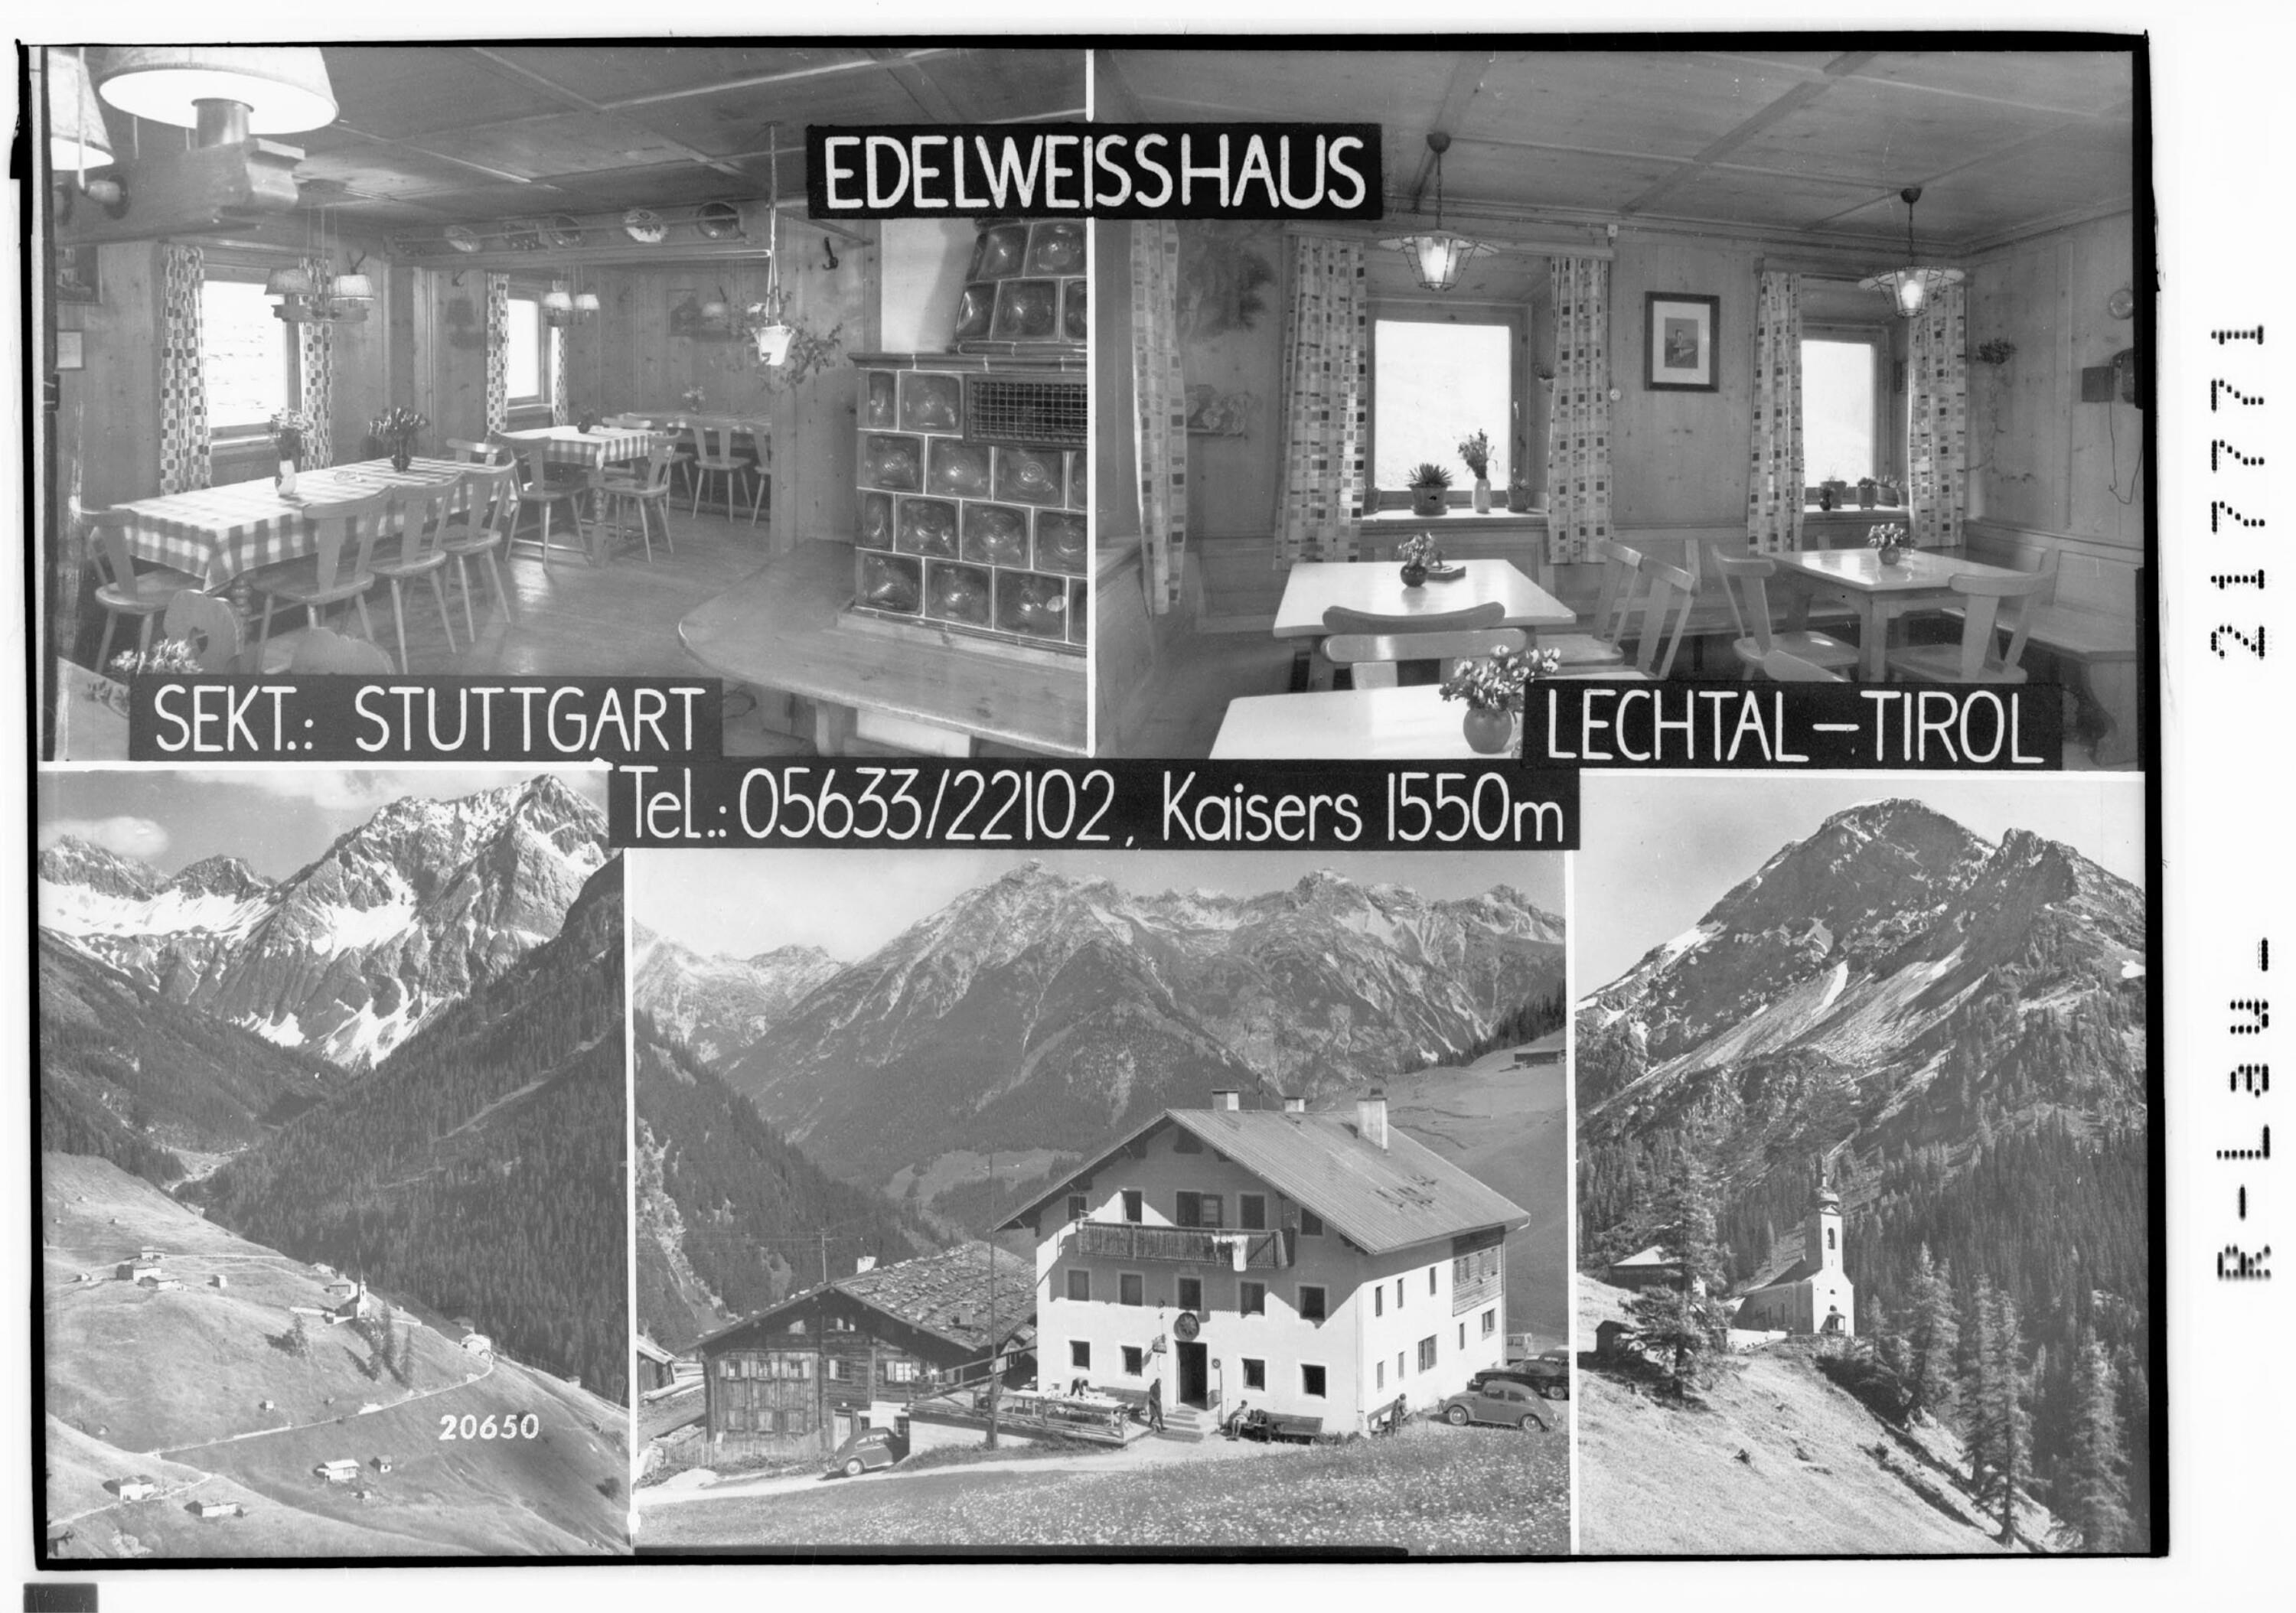 Edelweisshaus / Sektion Stuttgart / Kaisers 1550 m Lechtal - Tirol></div>


    <hr>
    <div class=